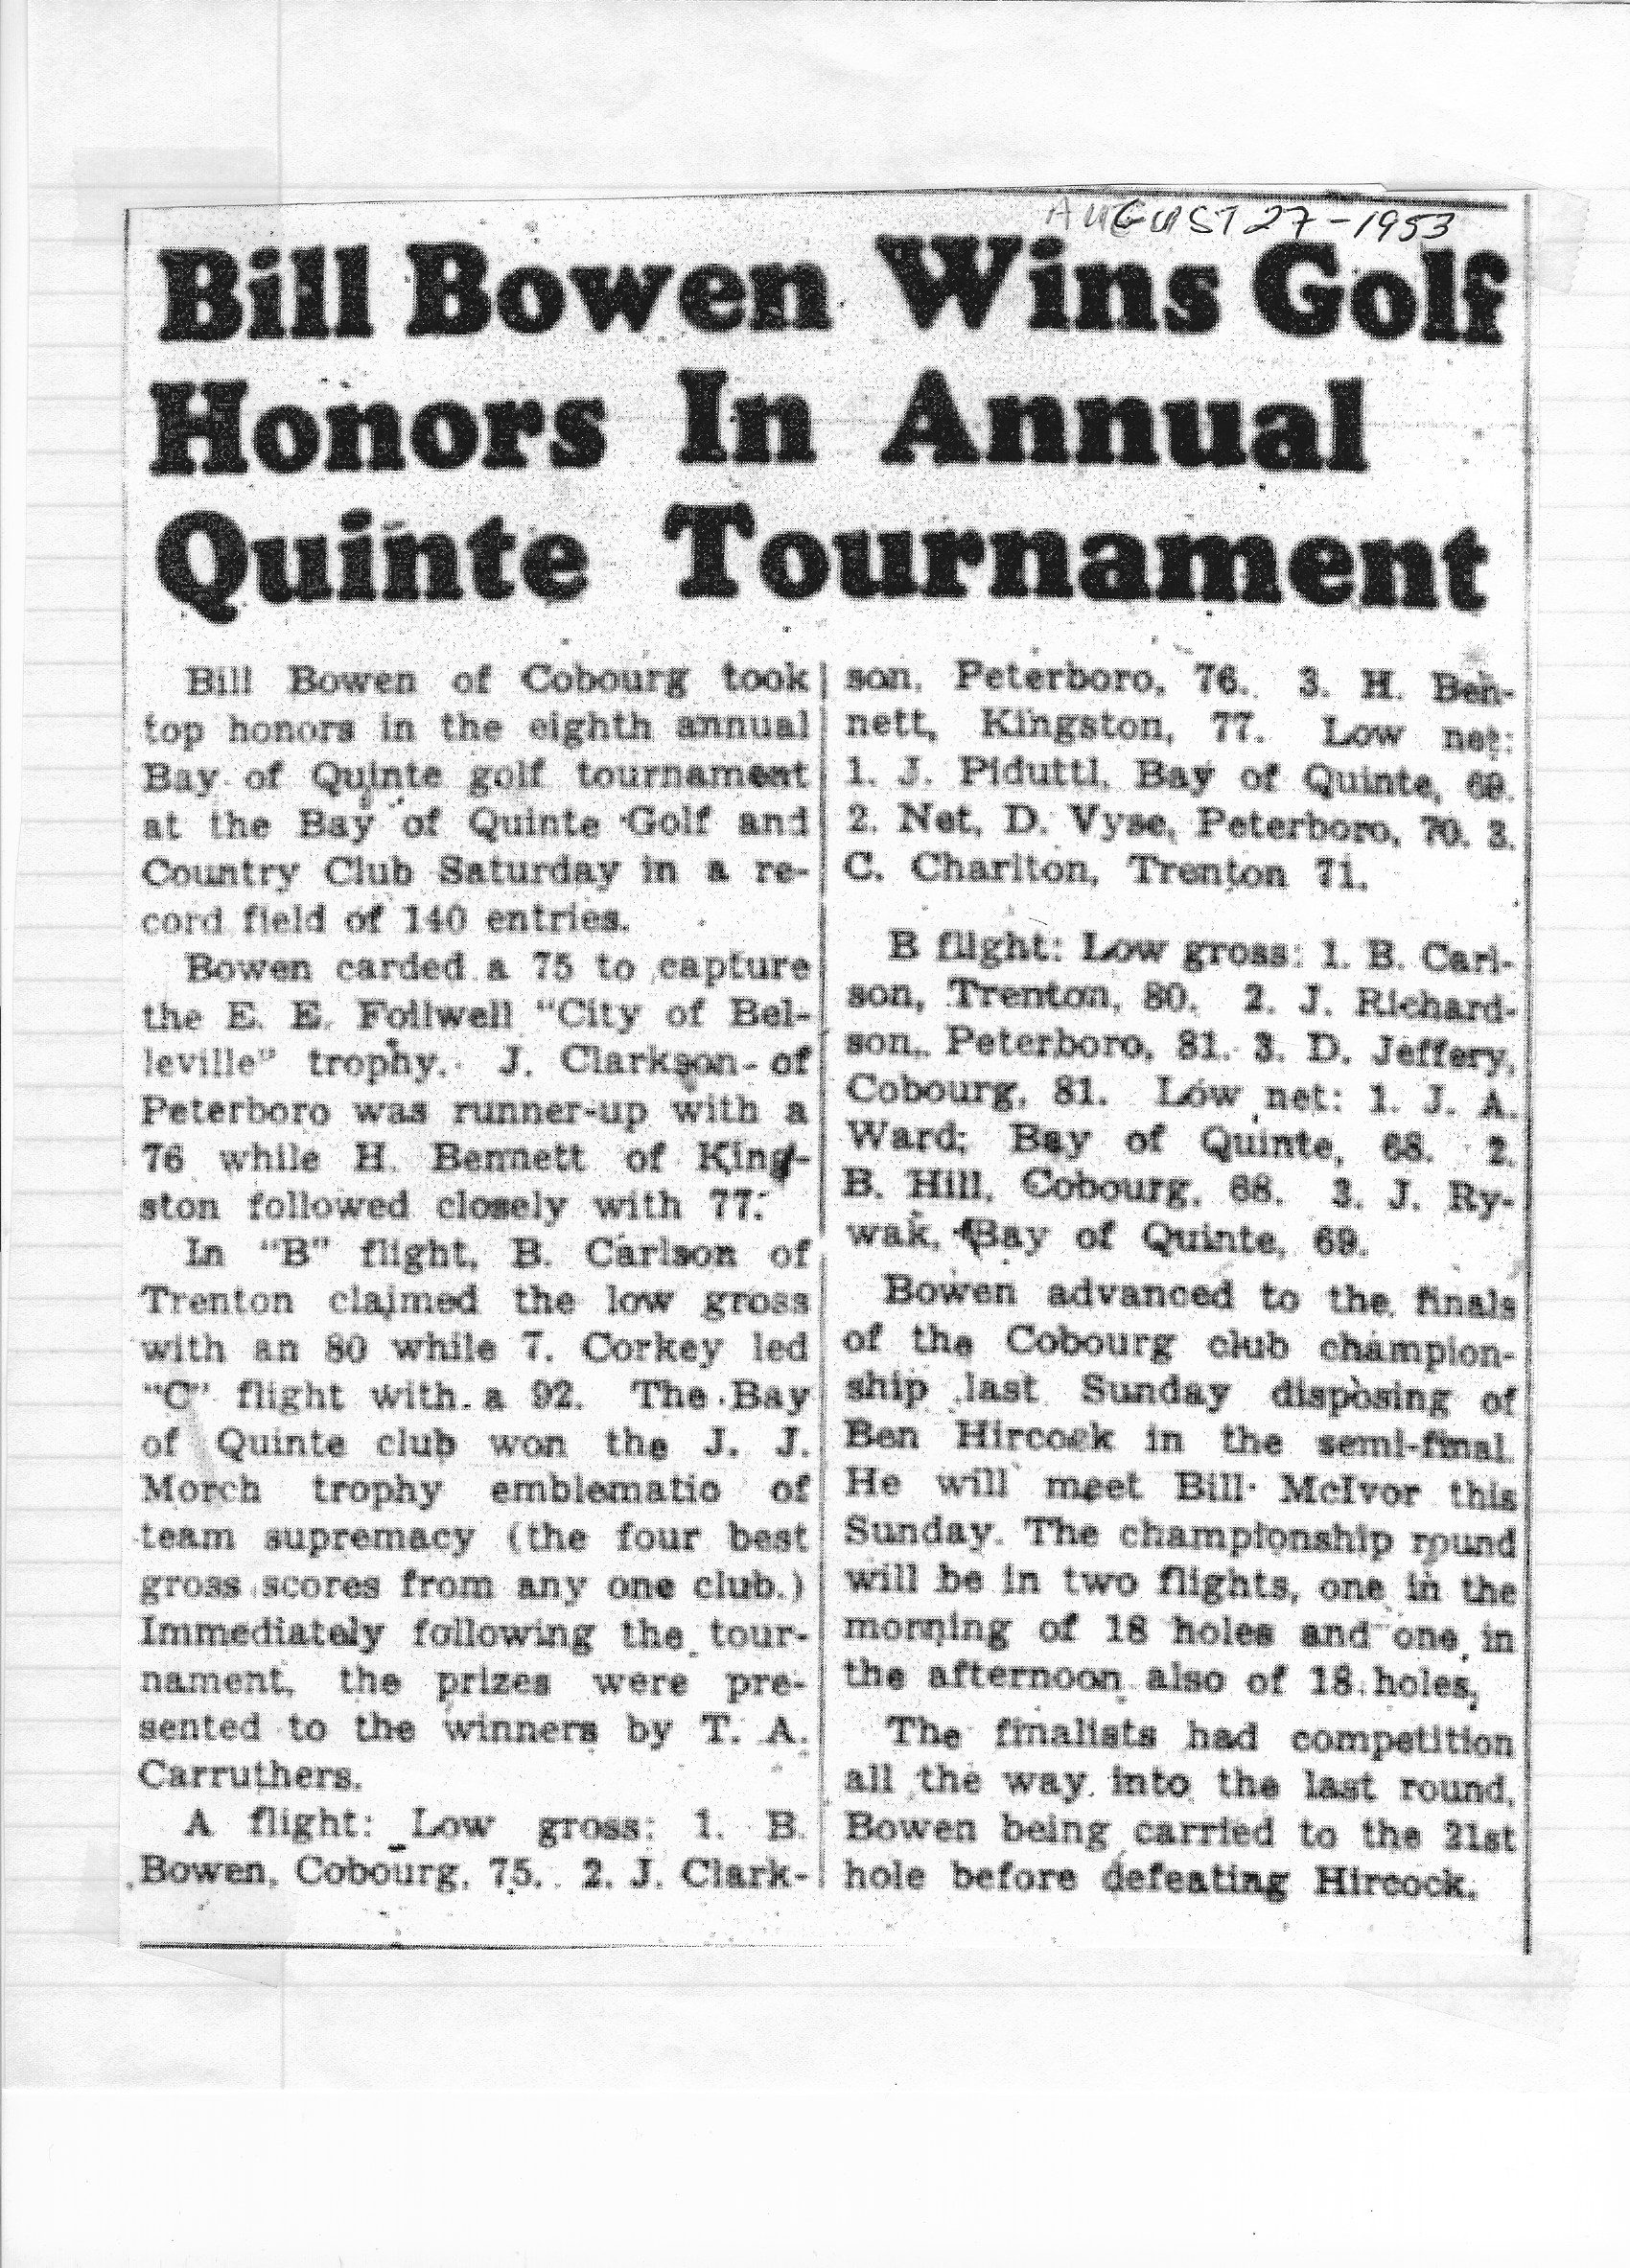 1953-08-27 Golf -Bill Bowen wins Quinte Tournament